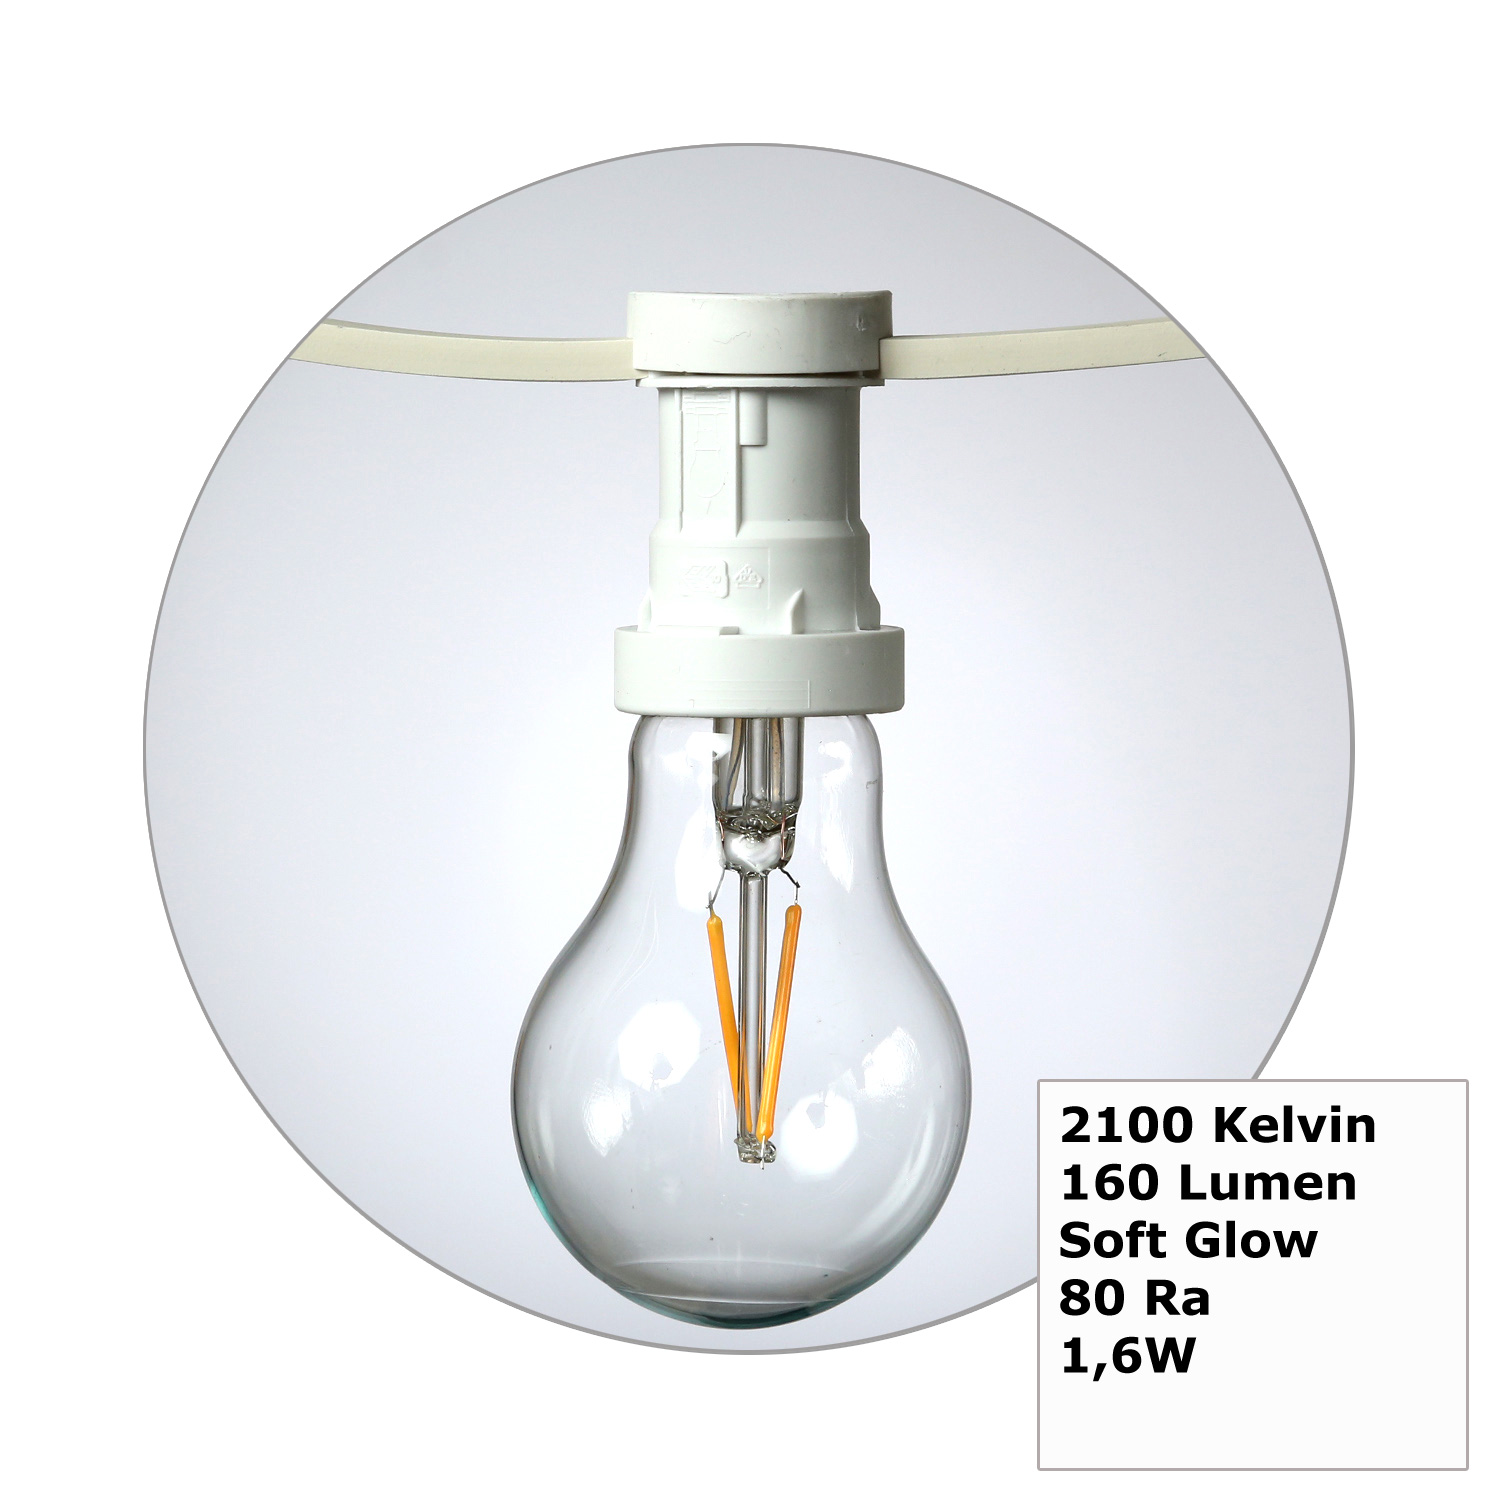 Illu-/Partylichterkette 10m - Außenlichterkette weiß - Made in Germany- 20 Edison LED Filamentlampen